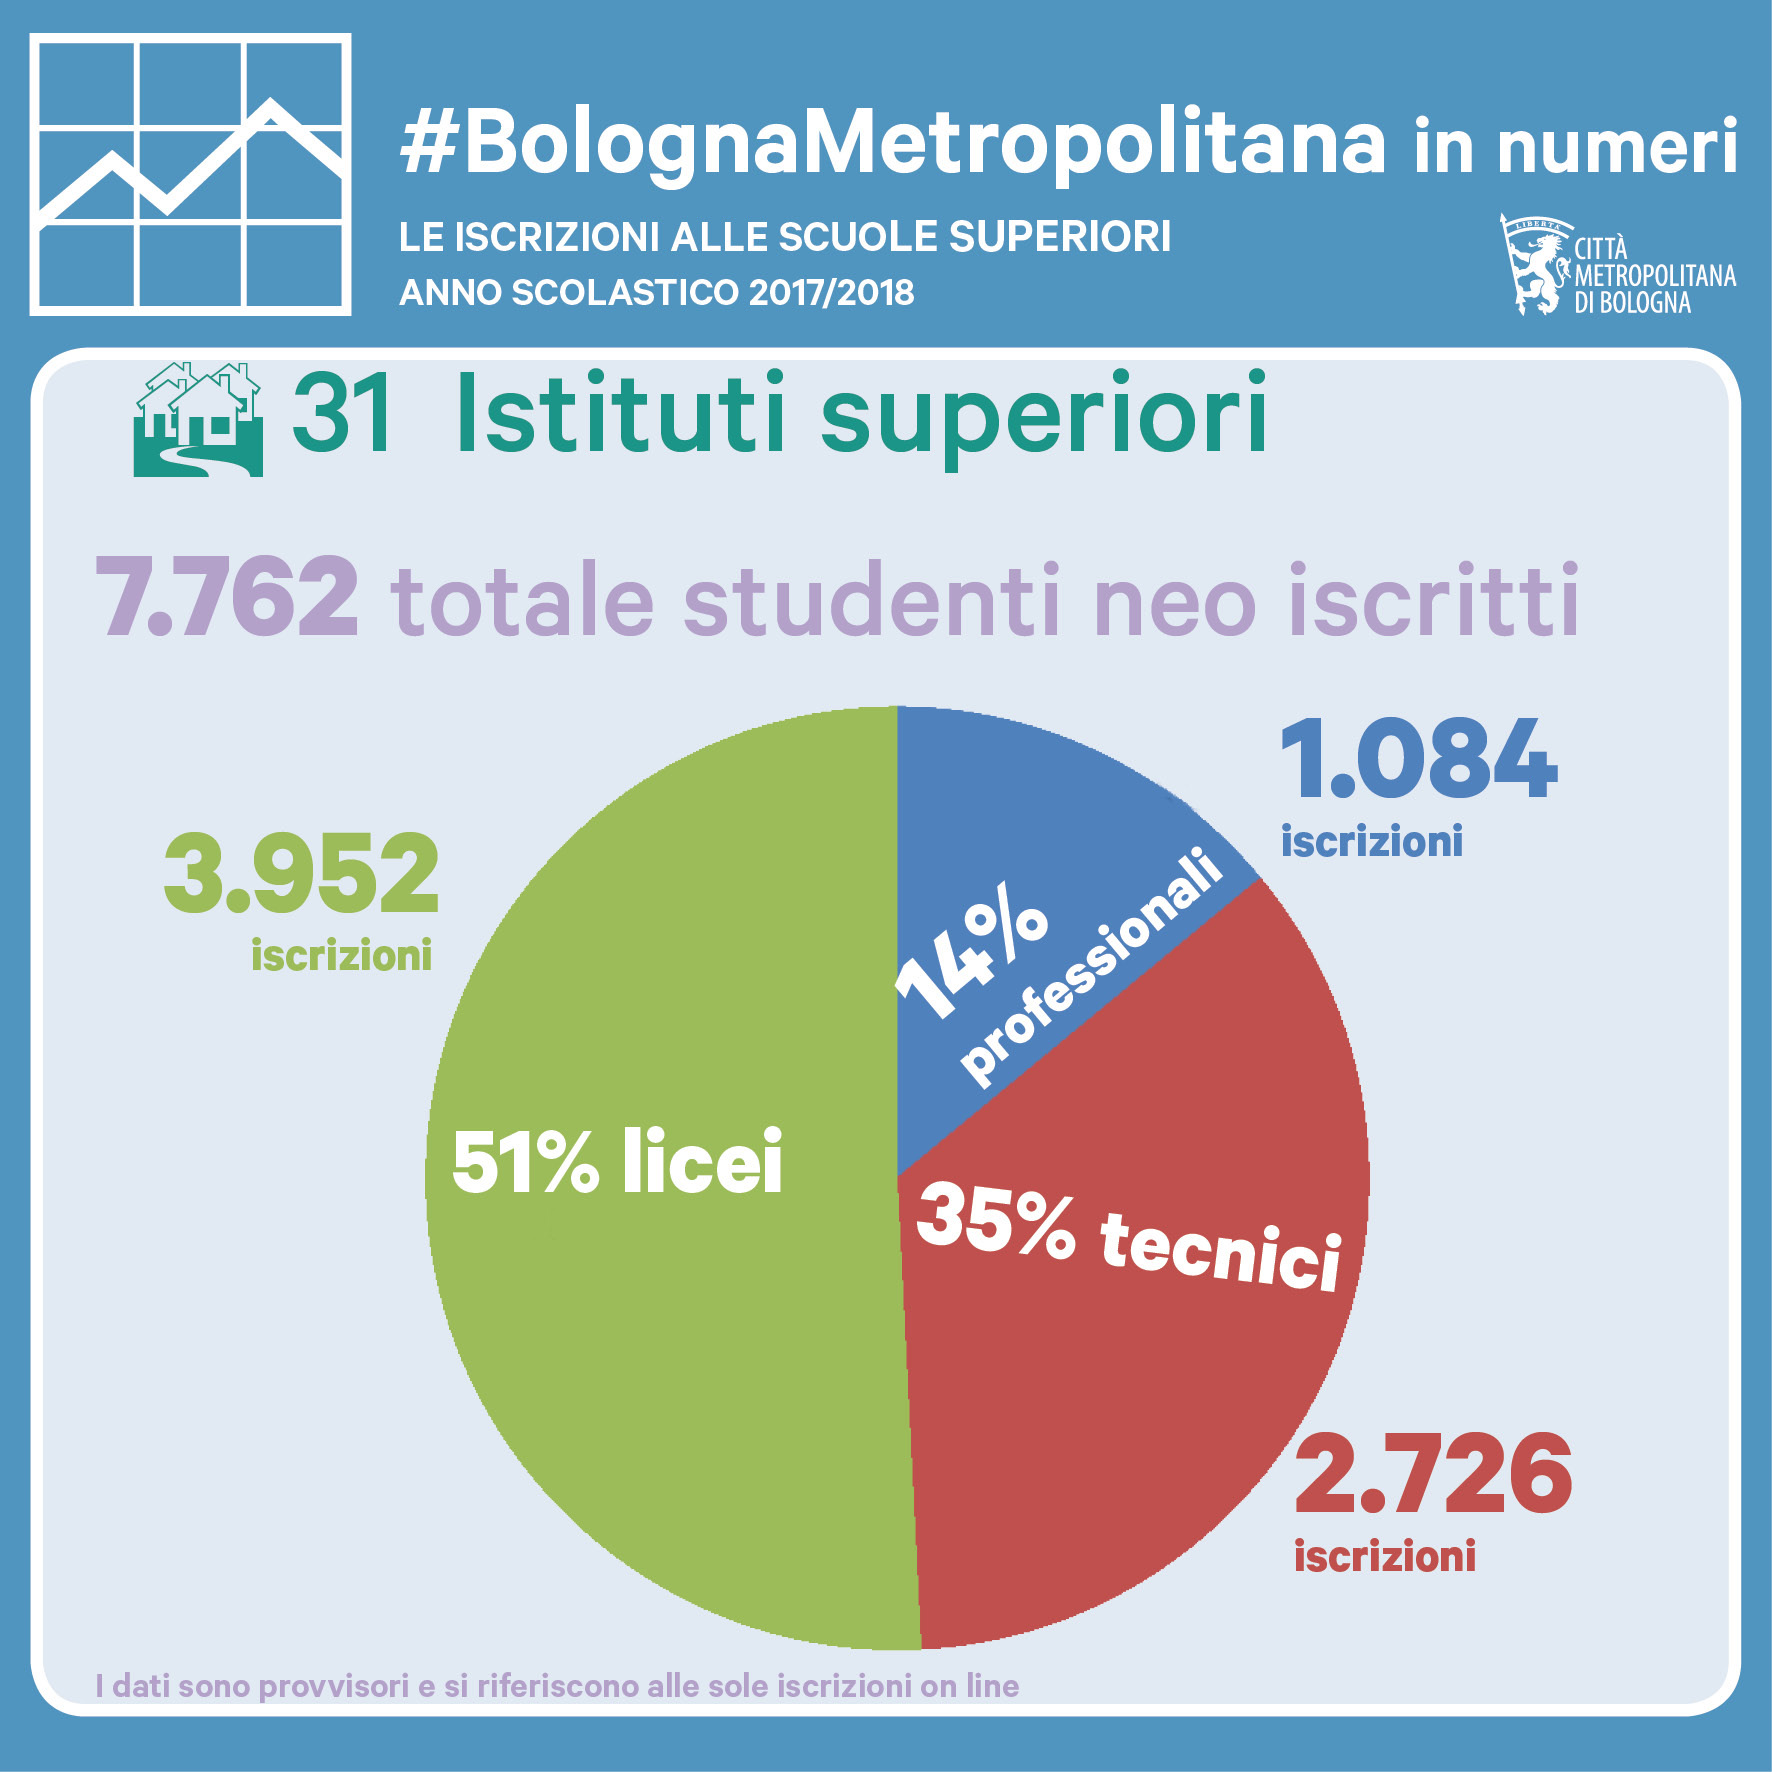 BolognaMetropolitana in numeri - iscrizione scolastica